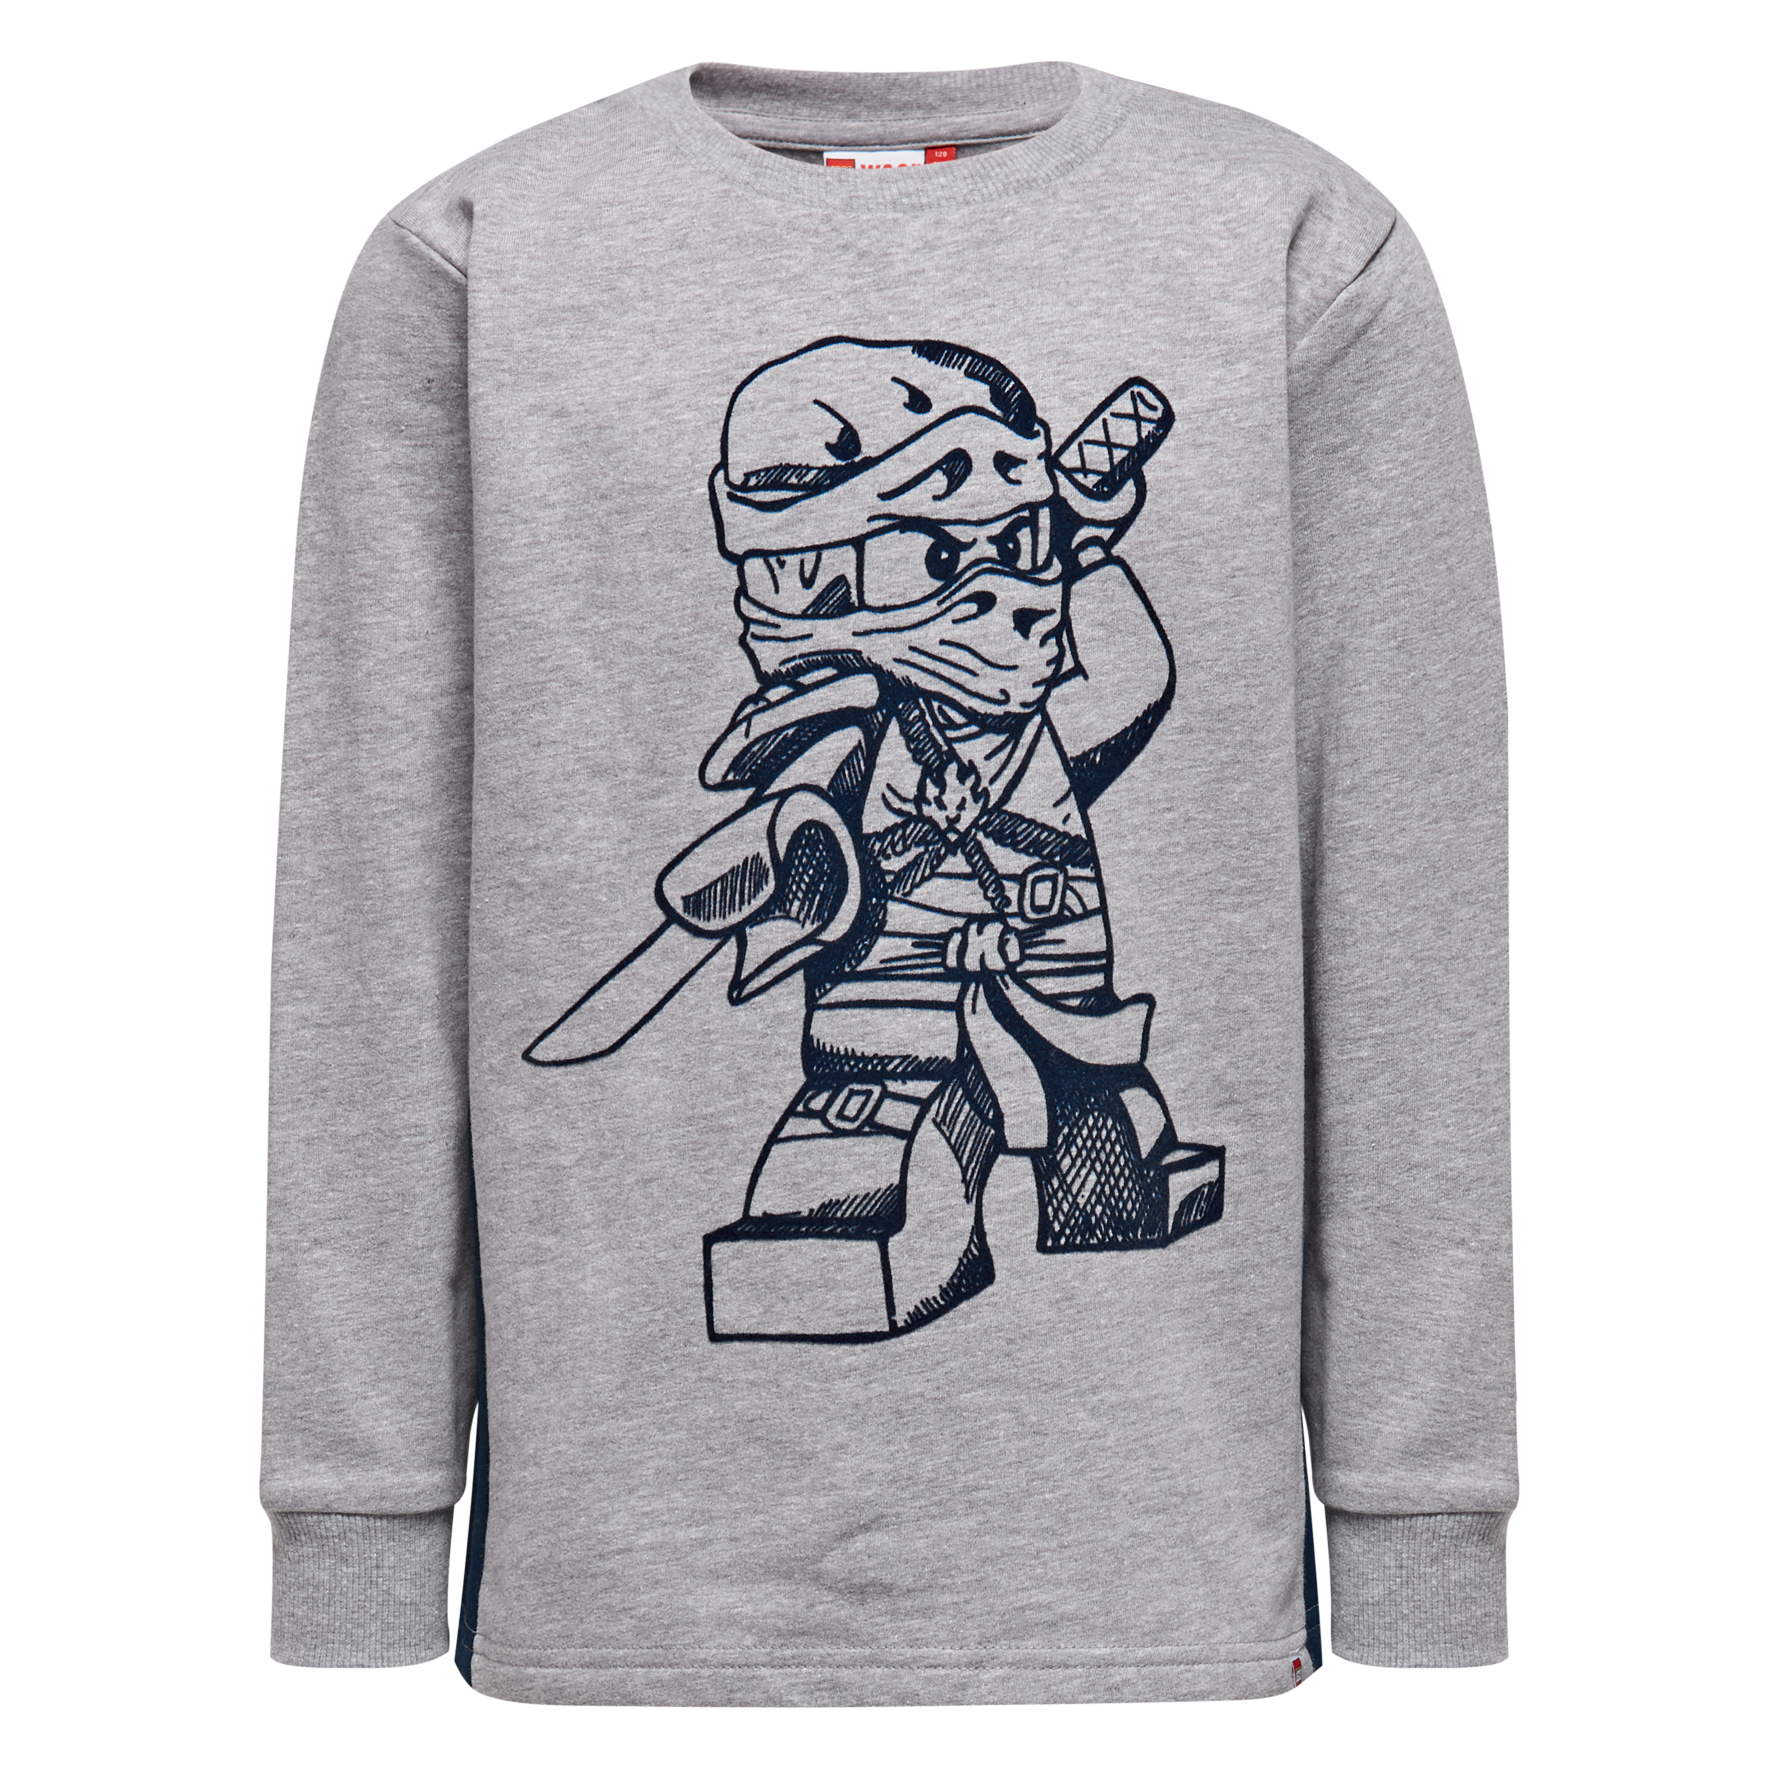 Lego Wear Boys Sweatshirt